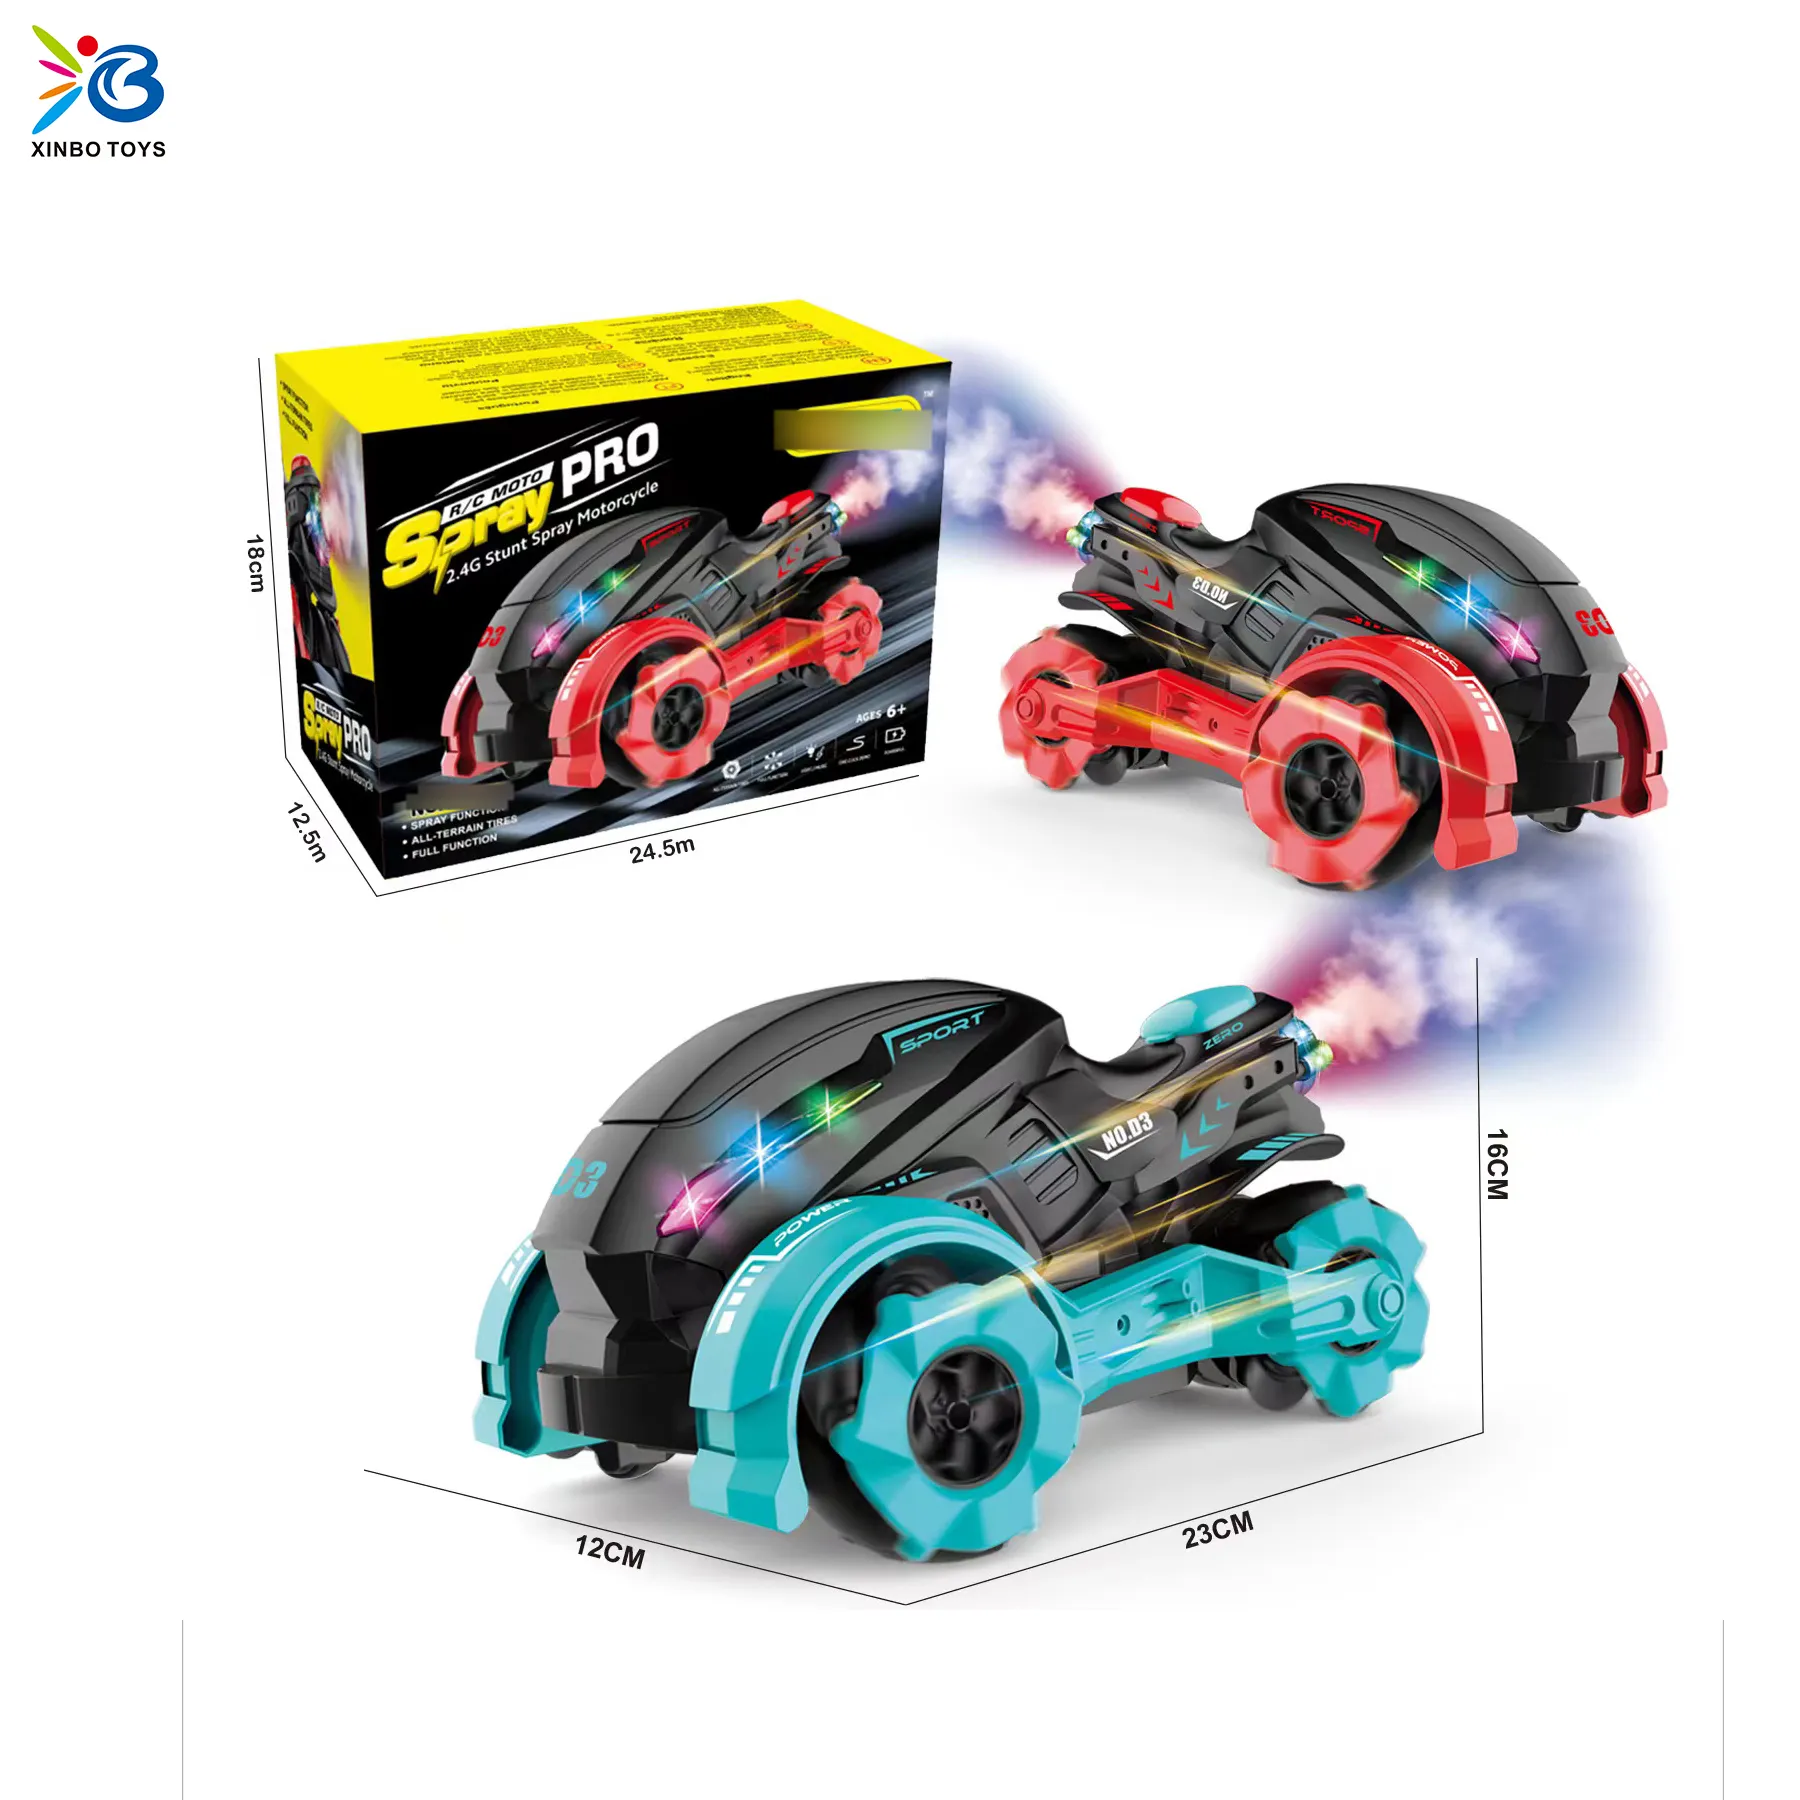 Nuovo giocattolo per moto acrobatica spray RC con luce giocattolo per veicoli per bambini RC scrambling regalo per moto per bambini